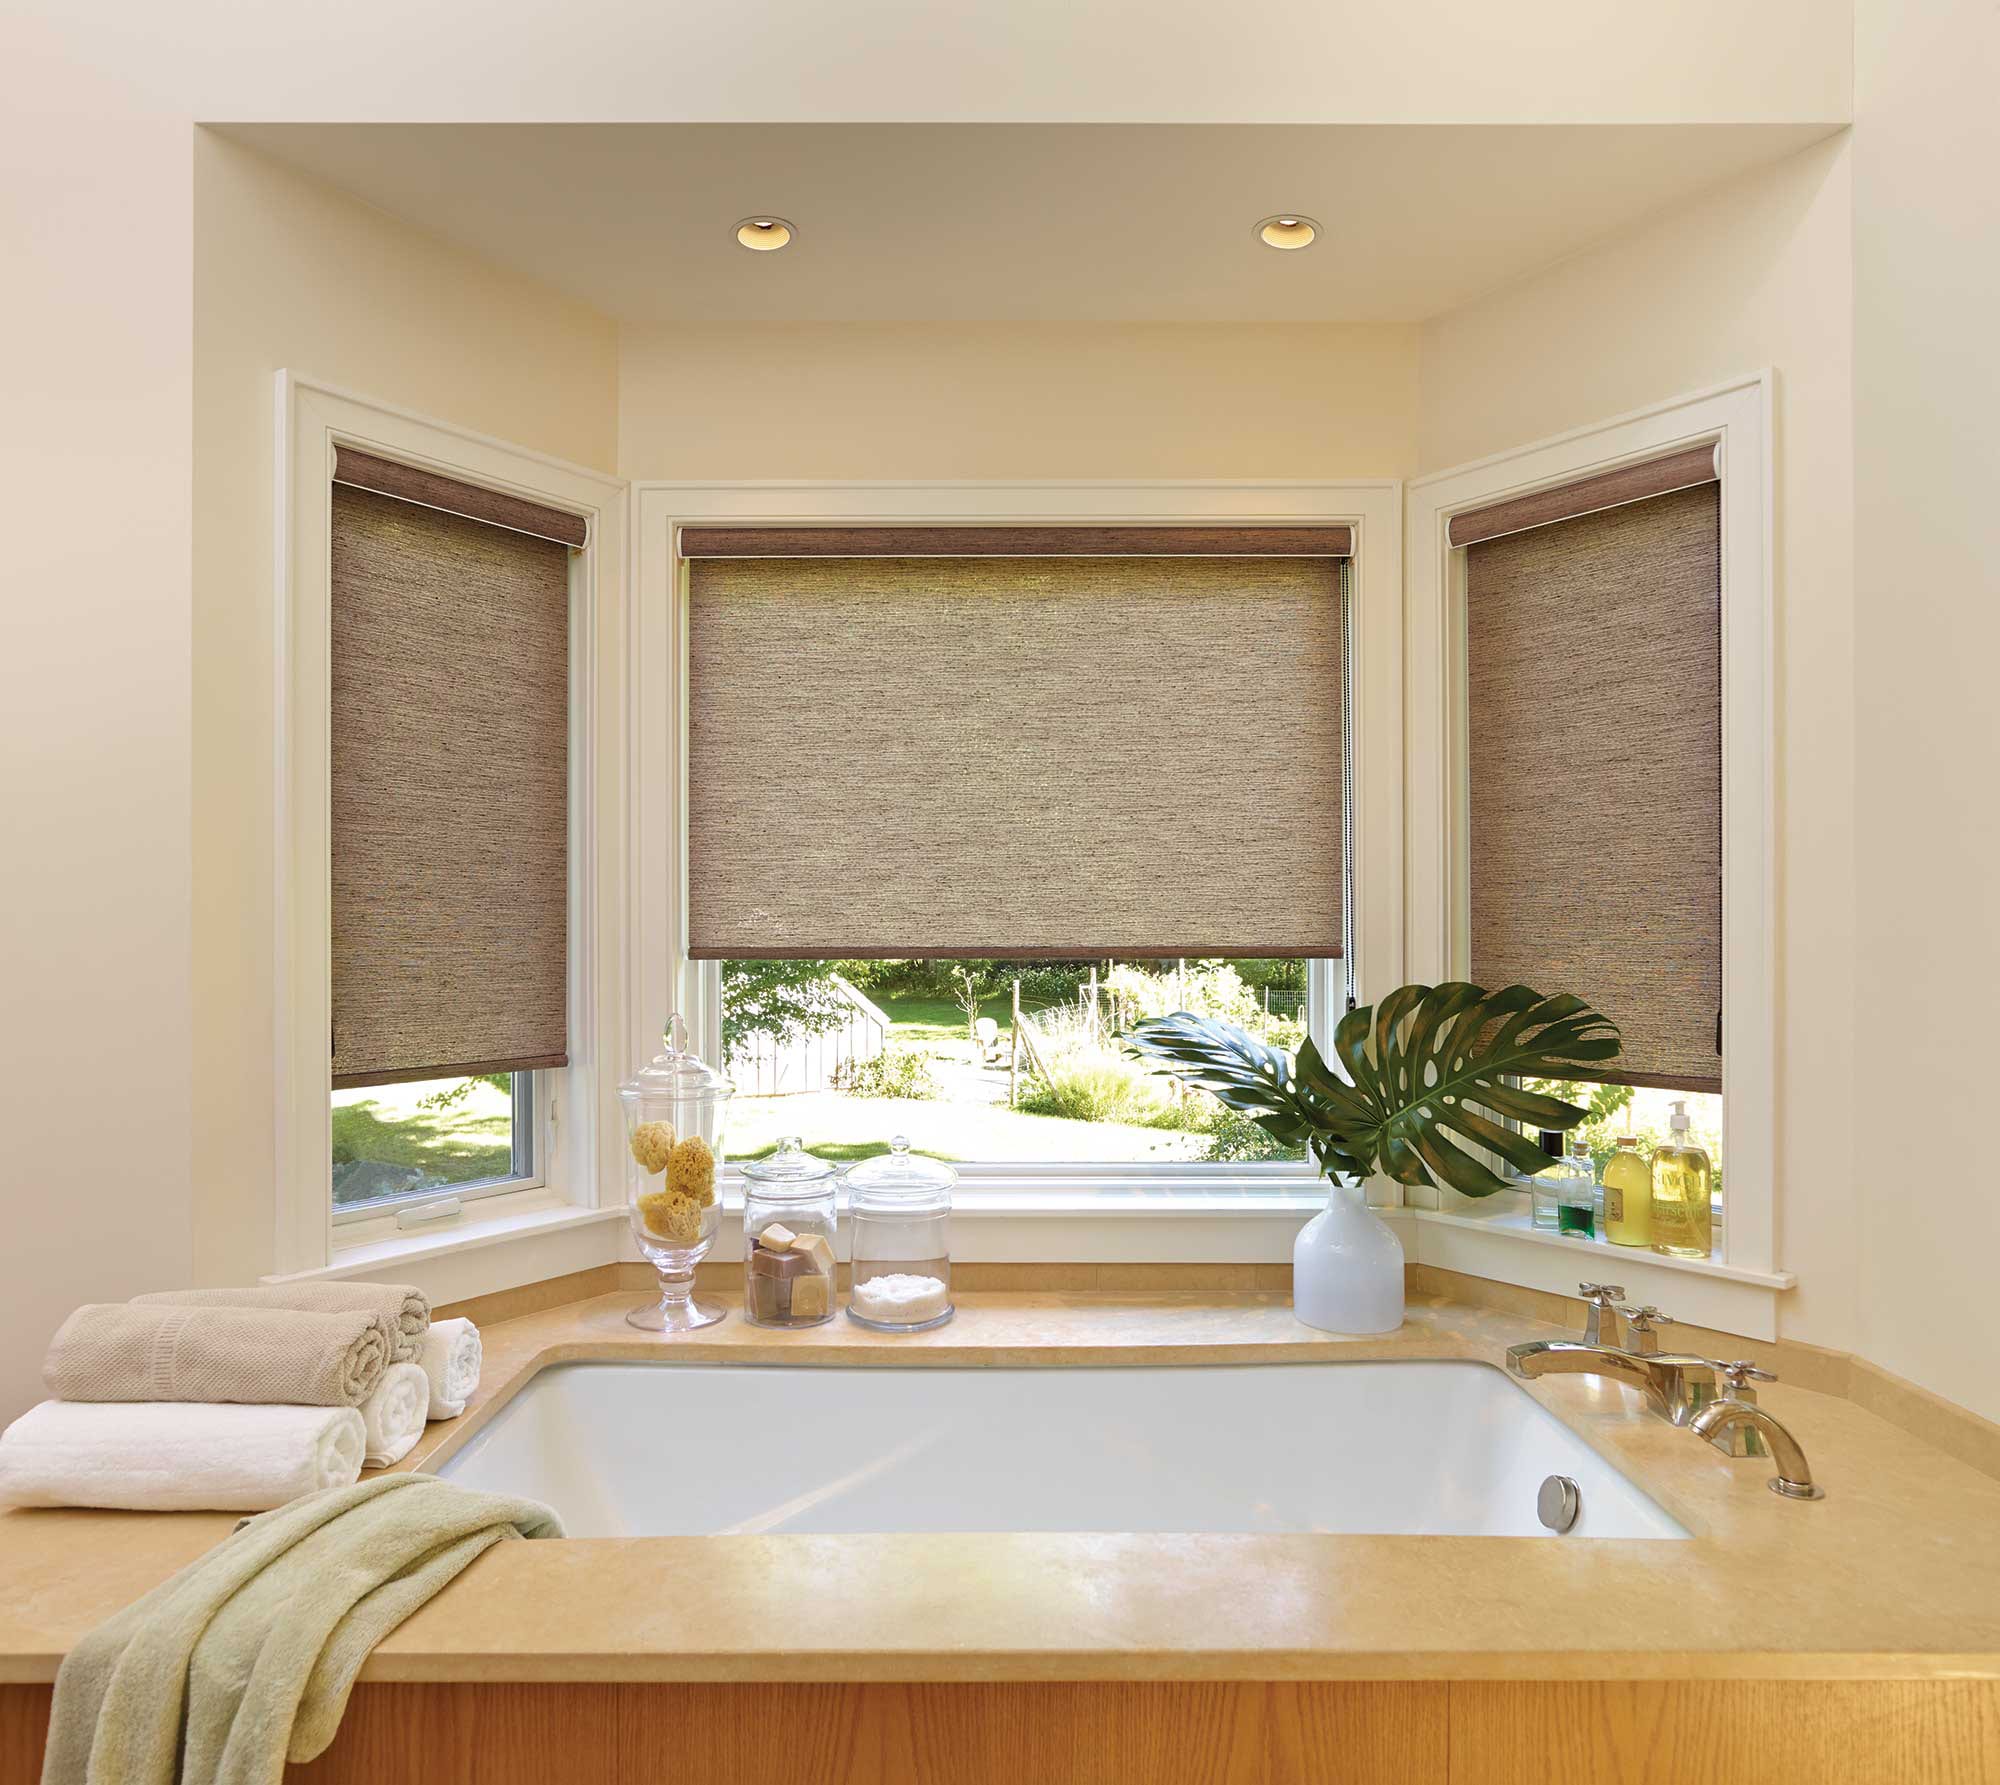 Privacy roller shades by a bath tub.